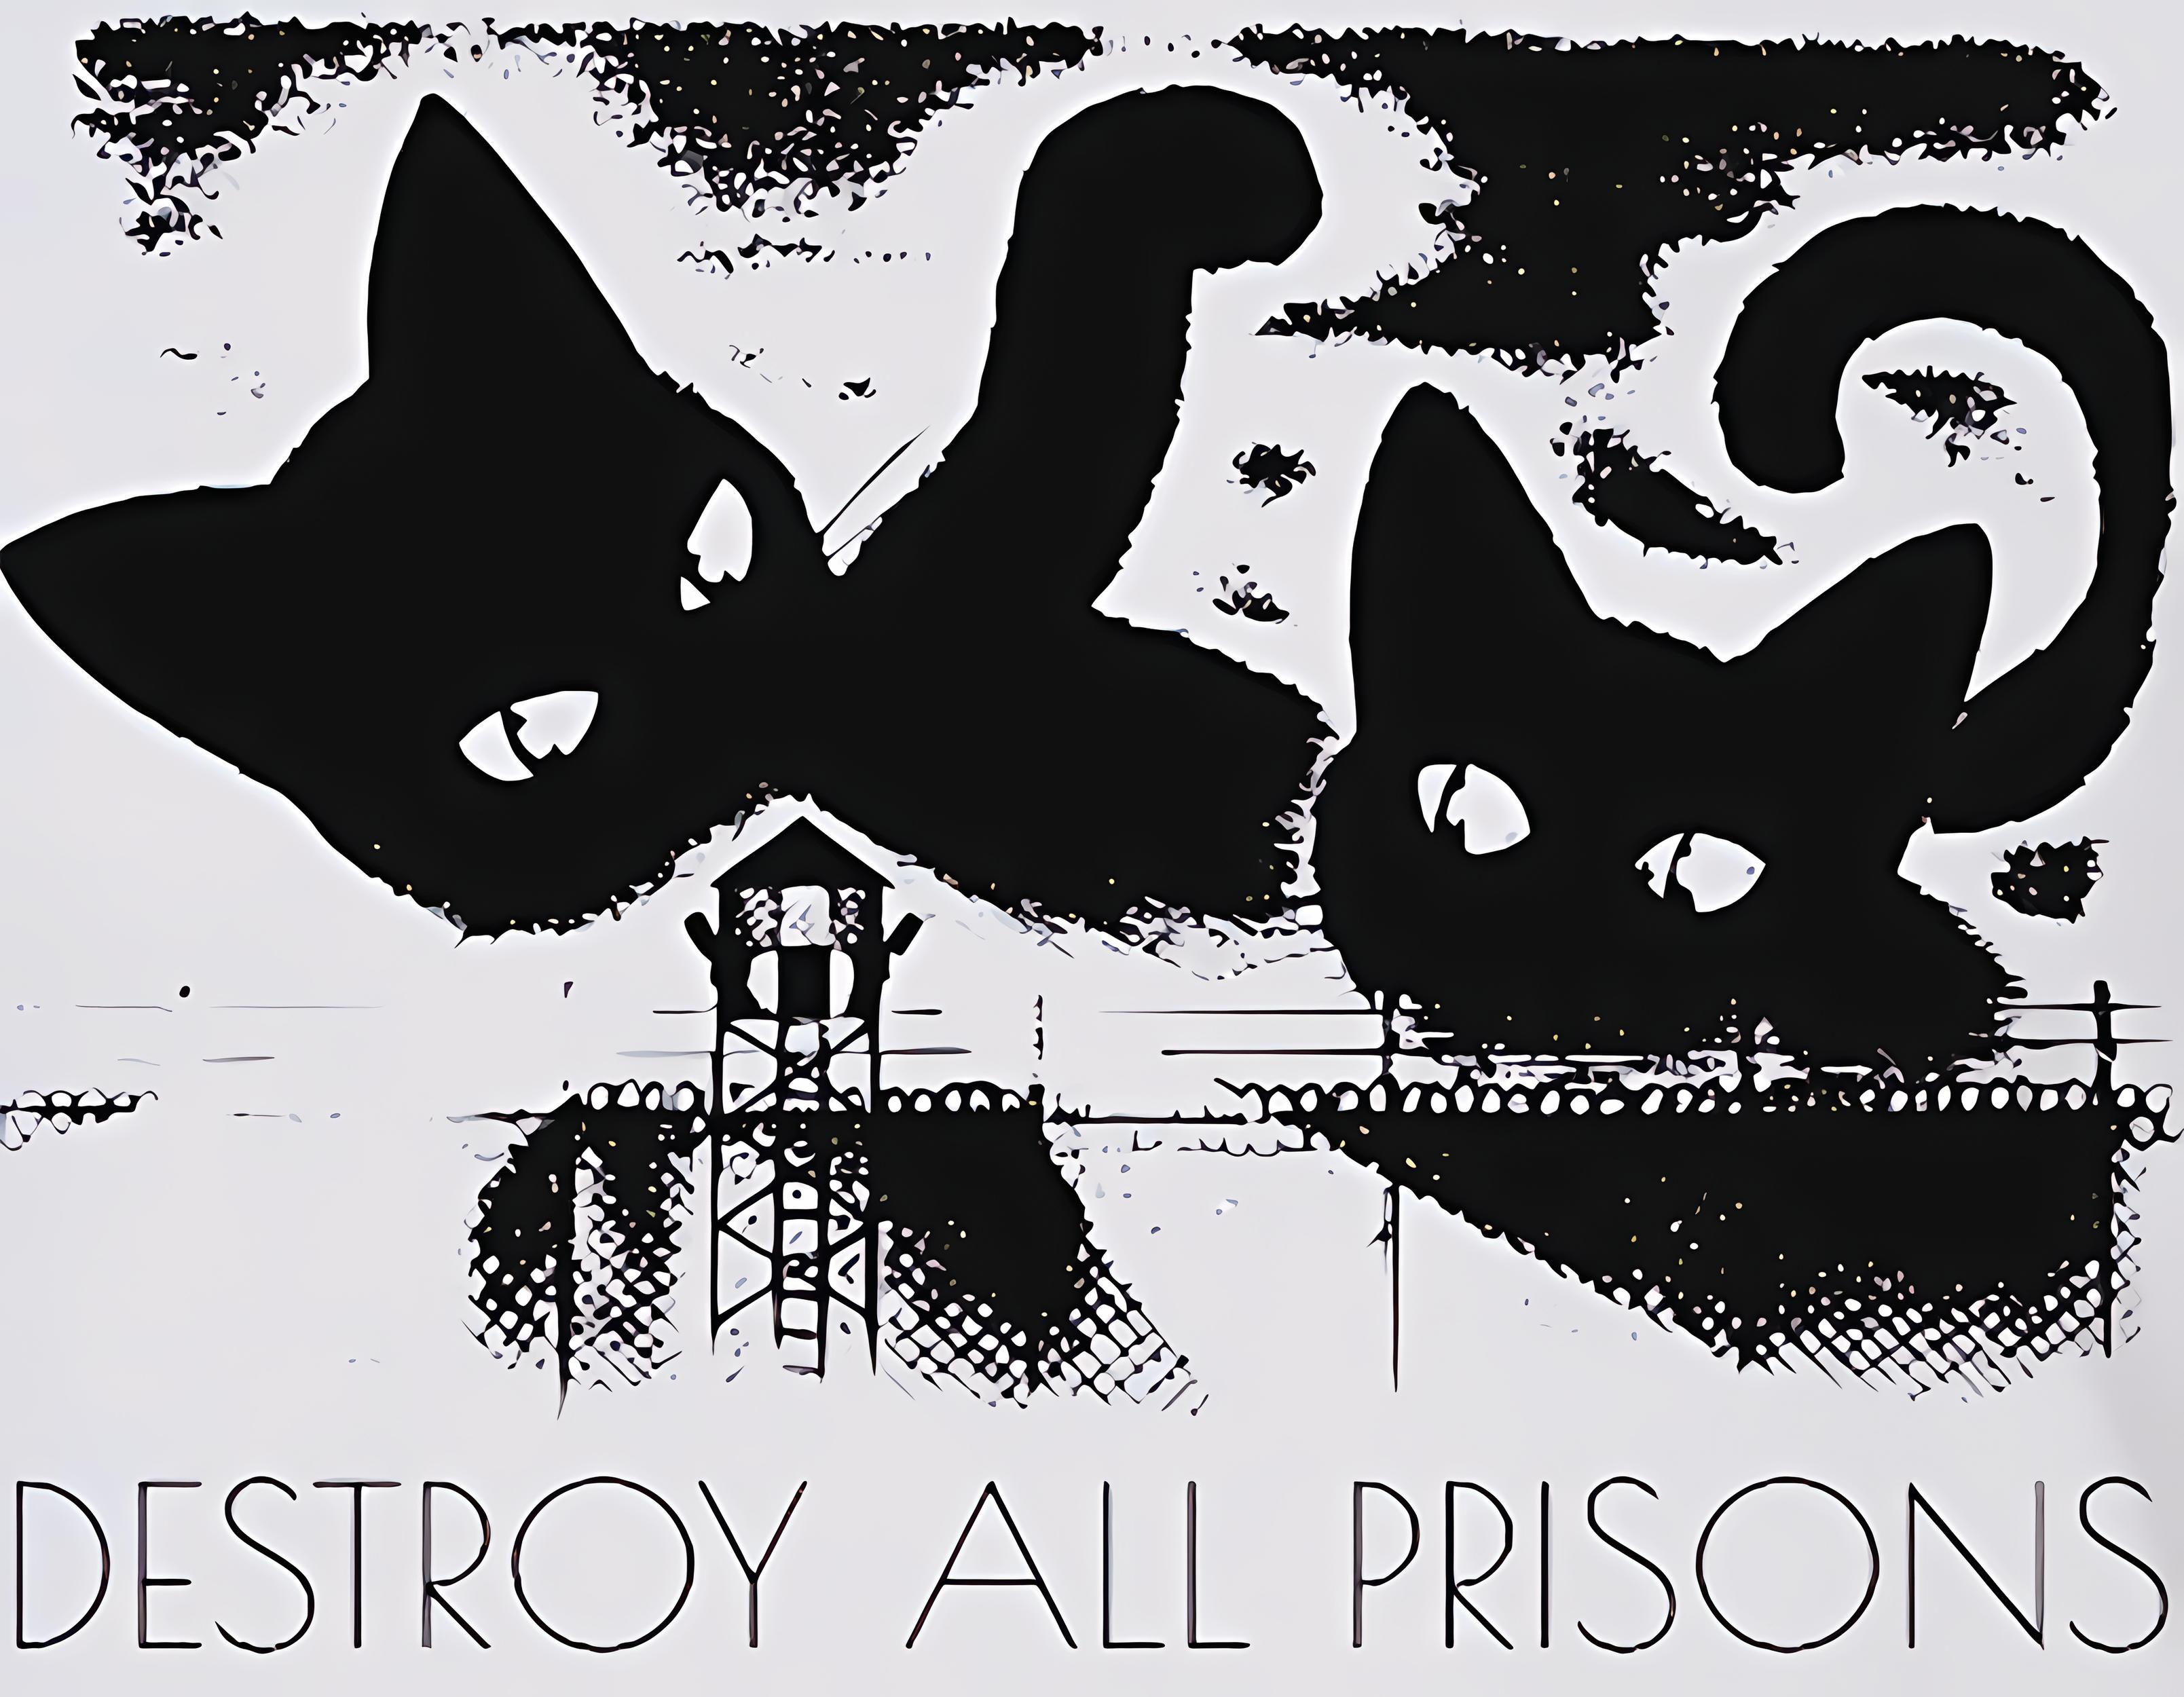 Destroy all prisons